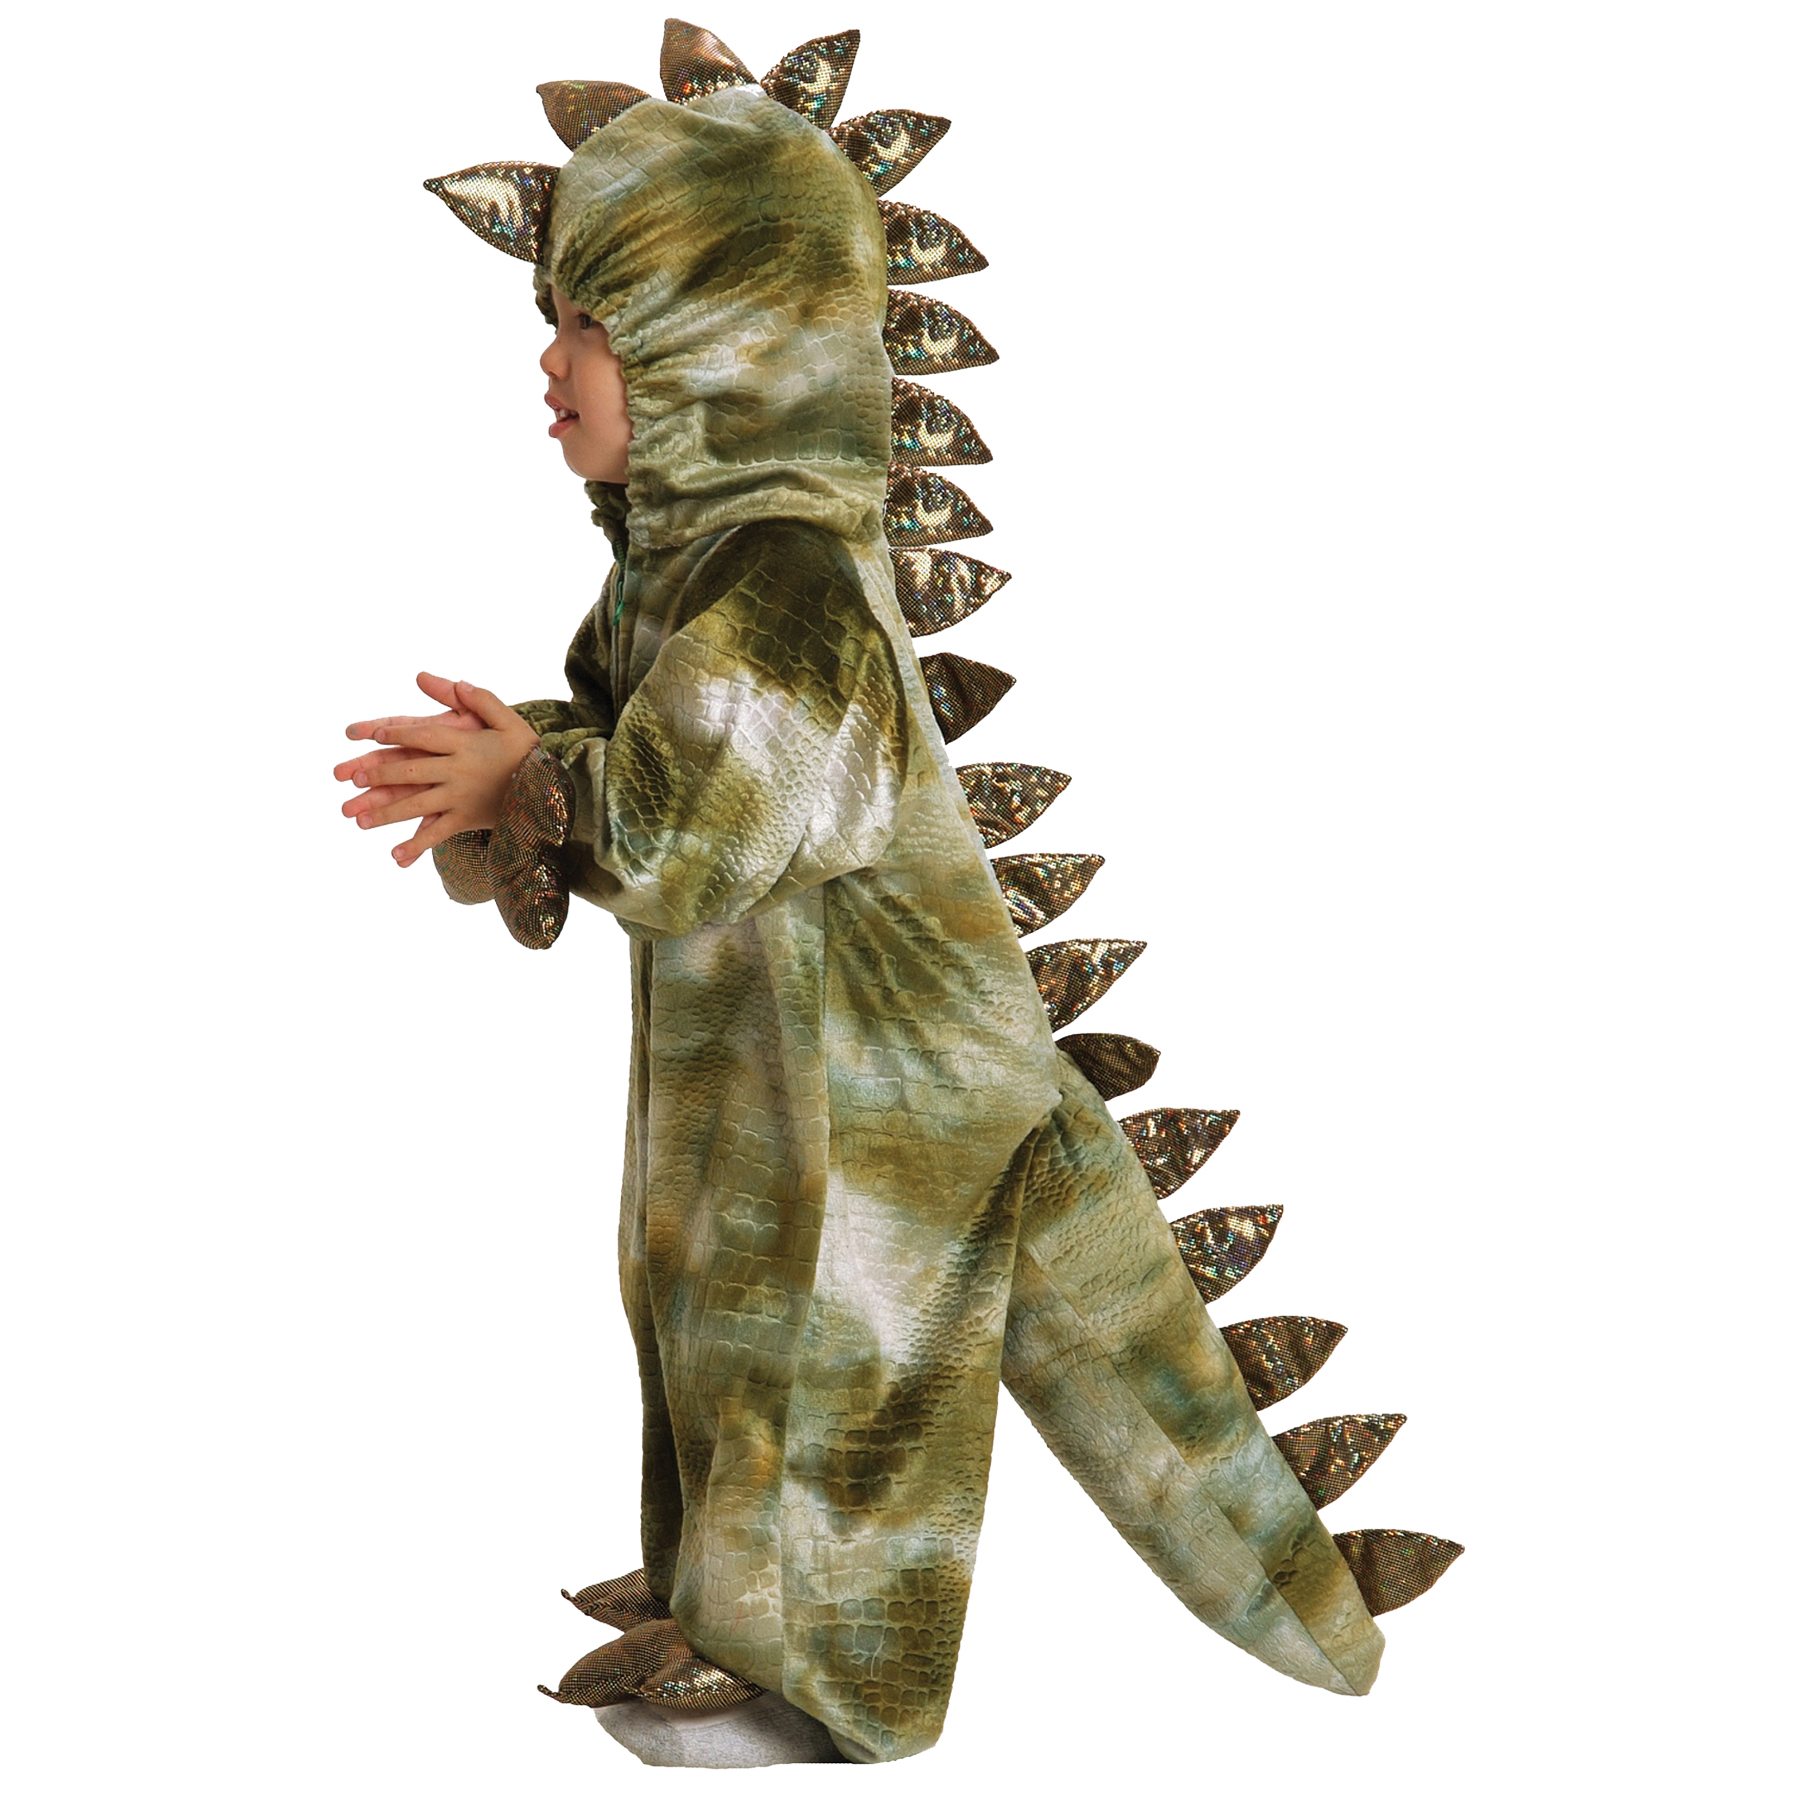 Boy's T-Rex Costume